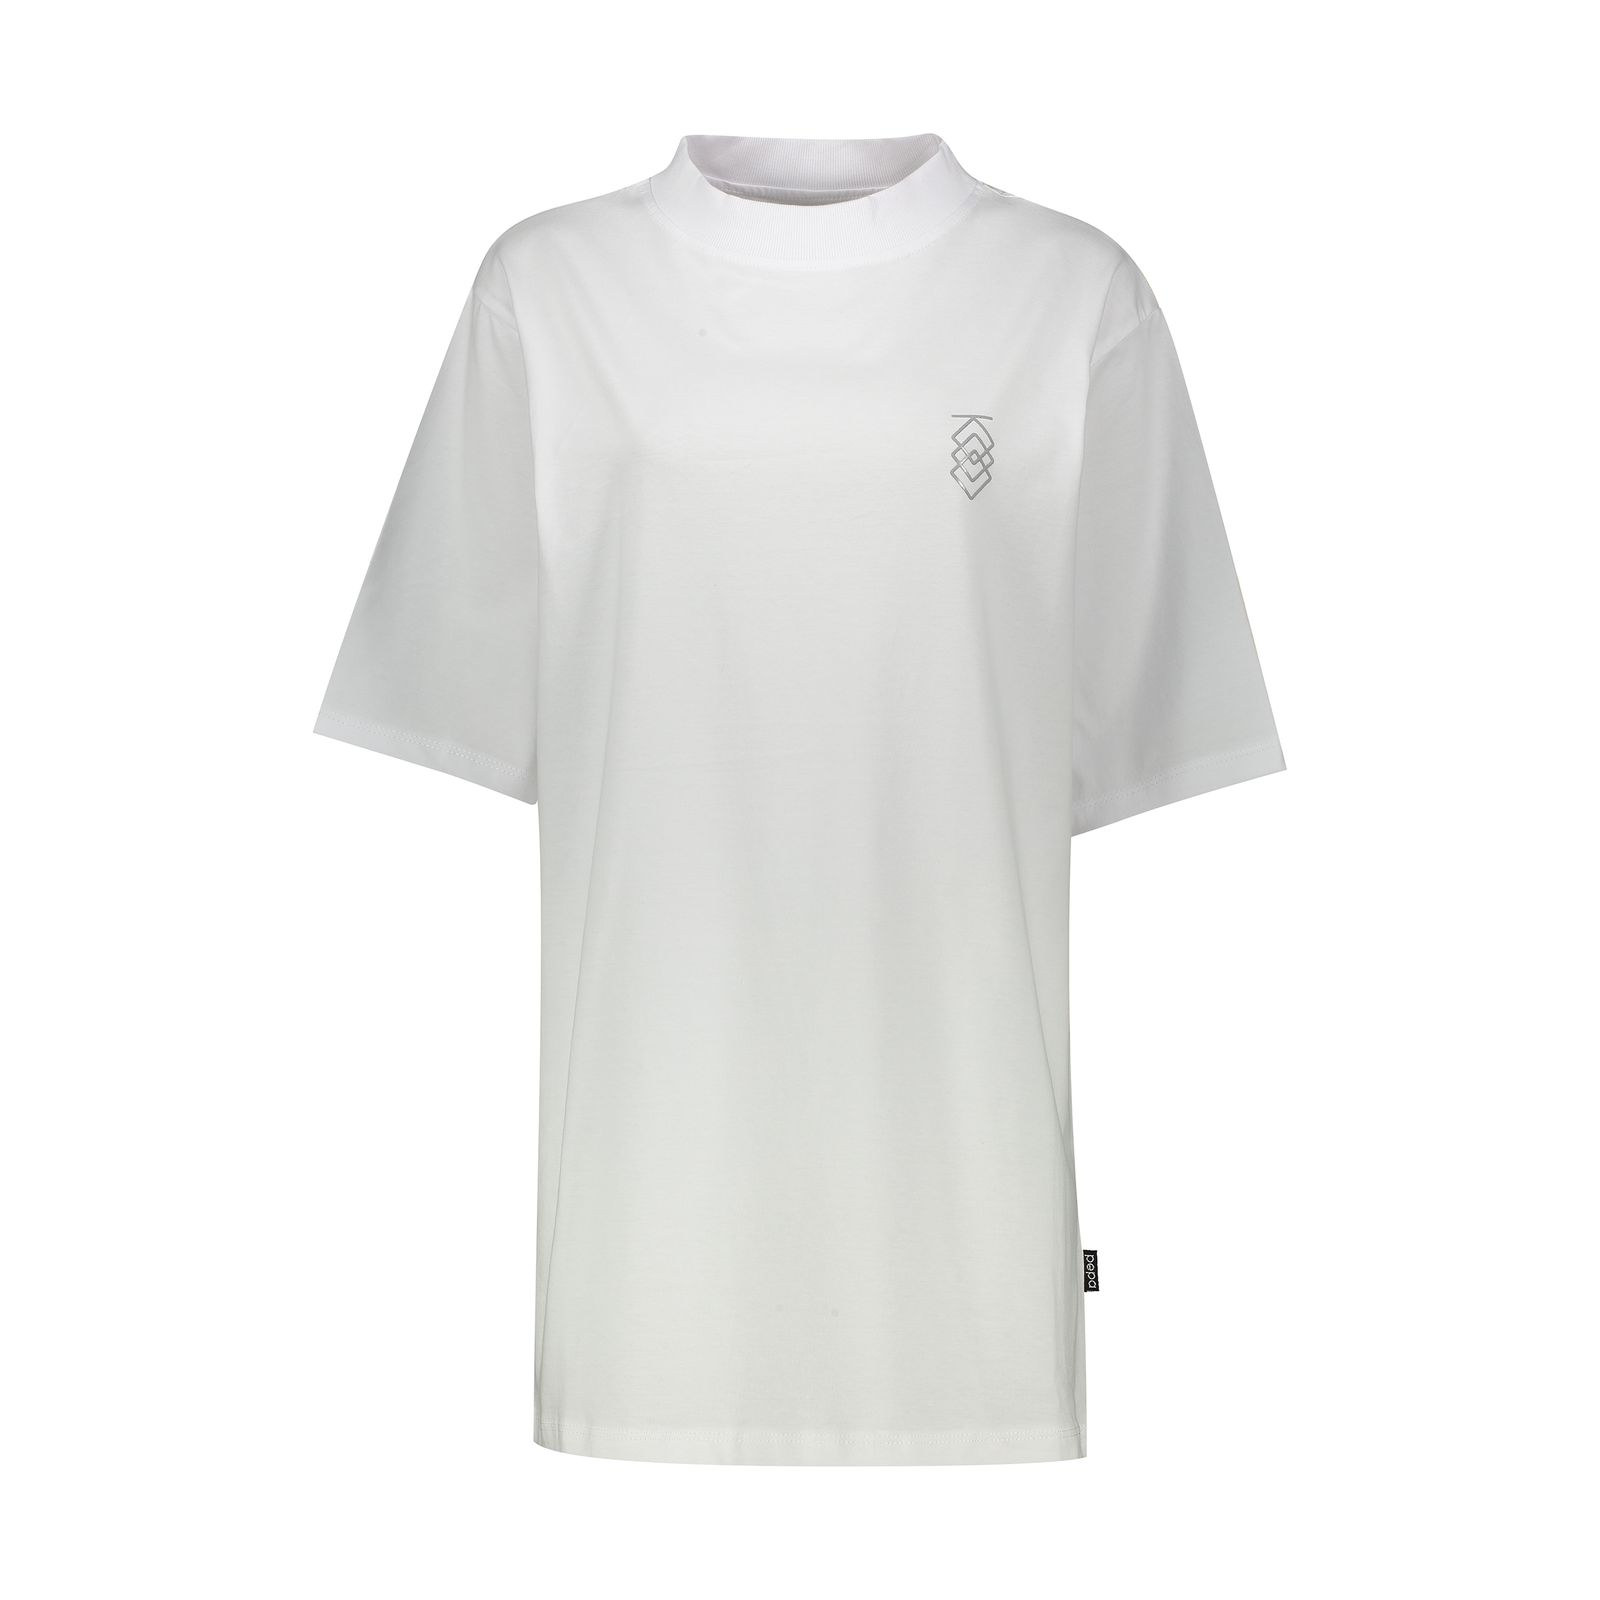 تی شرت آستین کوتاه زنانه مدل MVP رنگ سفید -  - 1